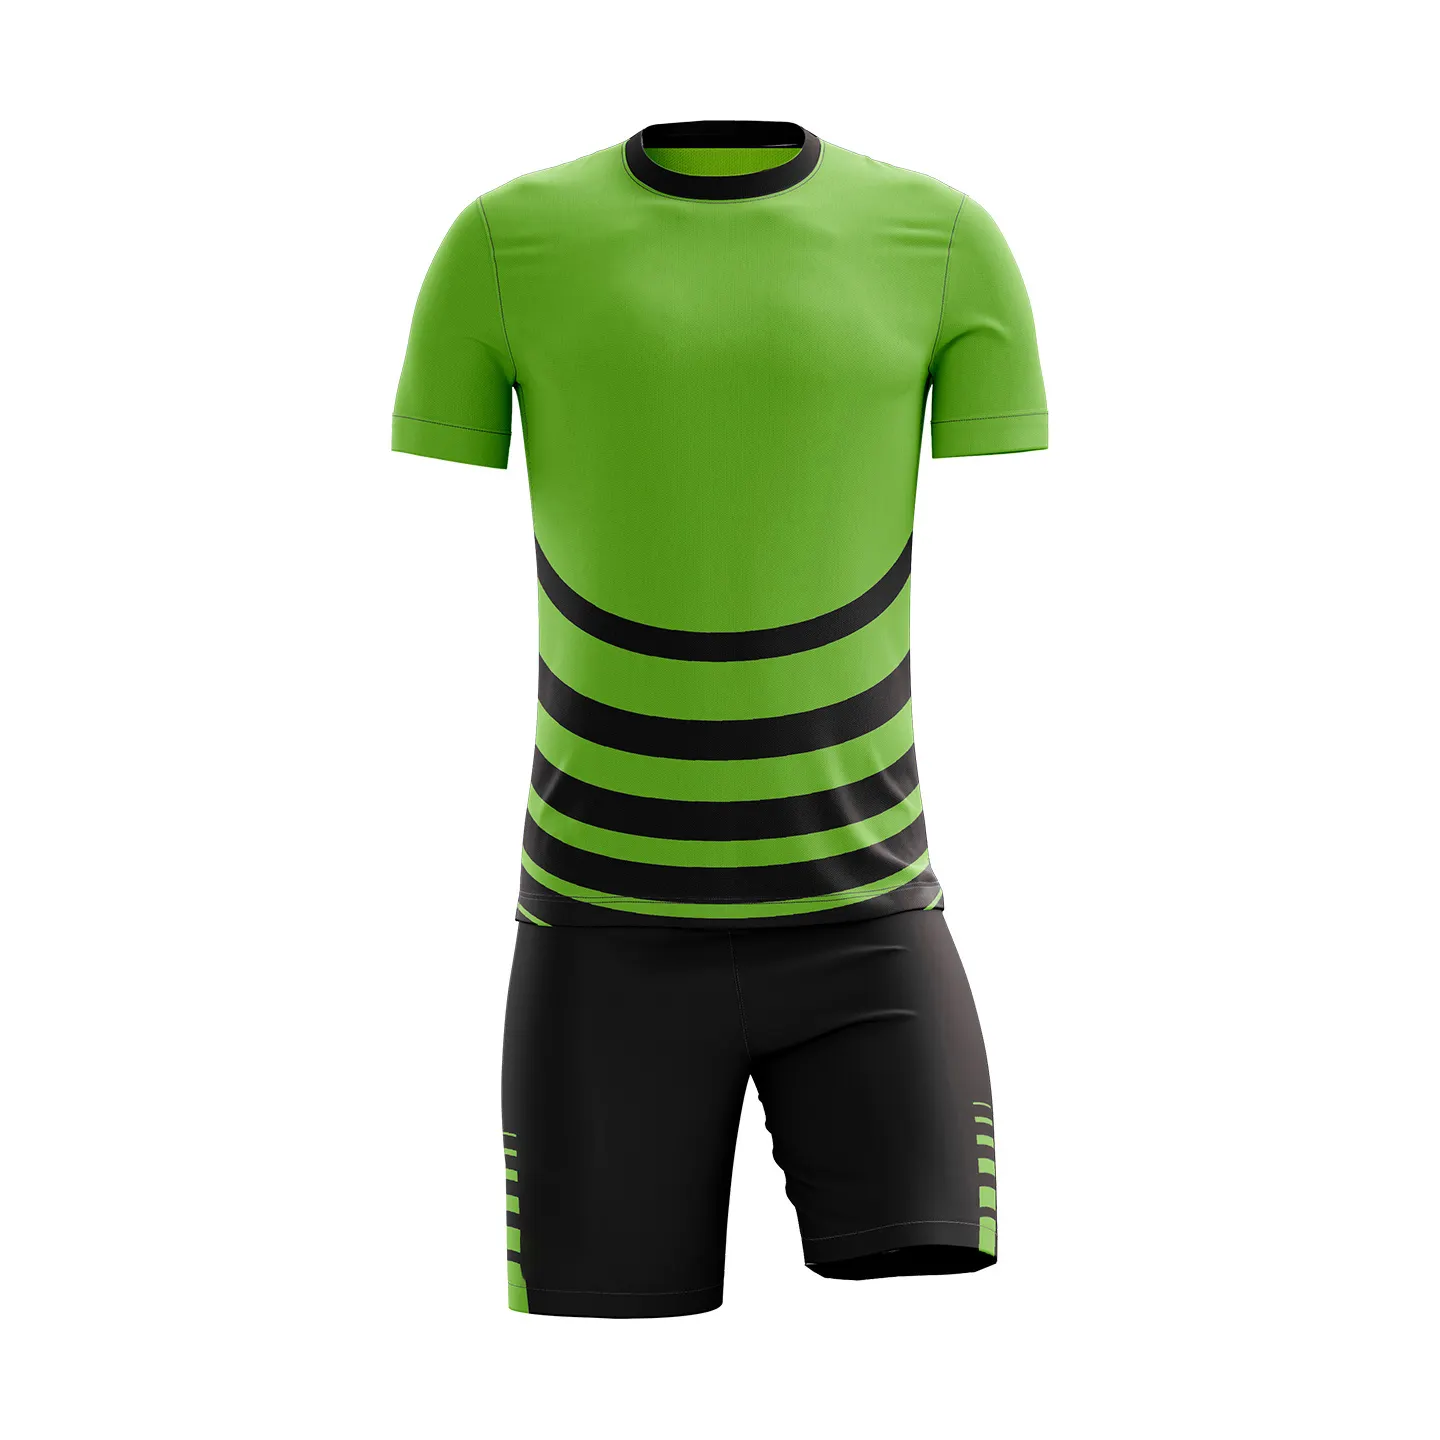 Takım elbise ucuz özel spor baskı logosu futbol forması yeni Model son futbol futbol forması tasarımları futbol